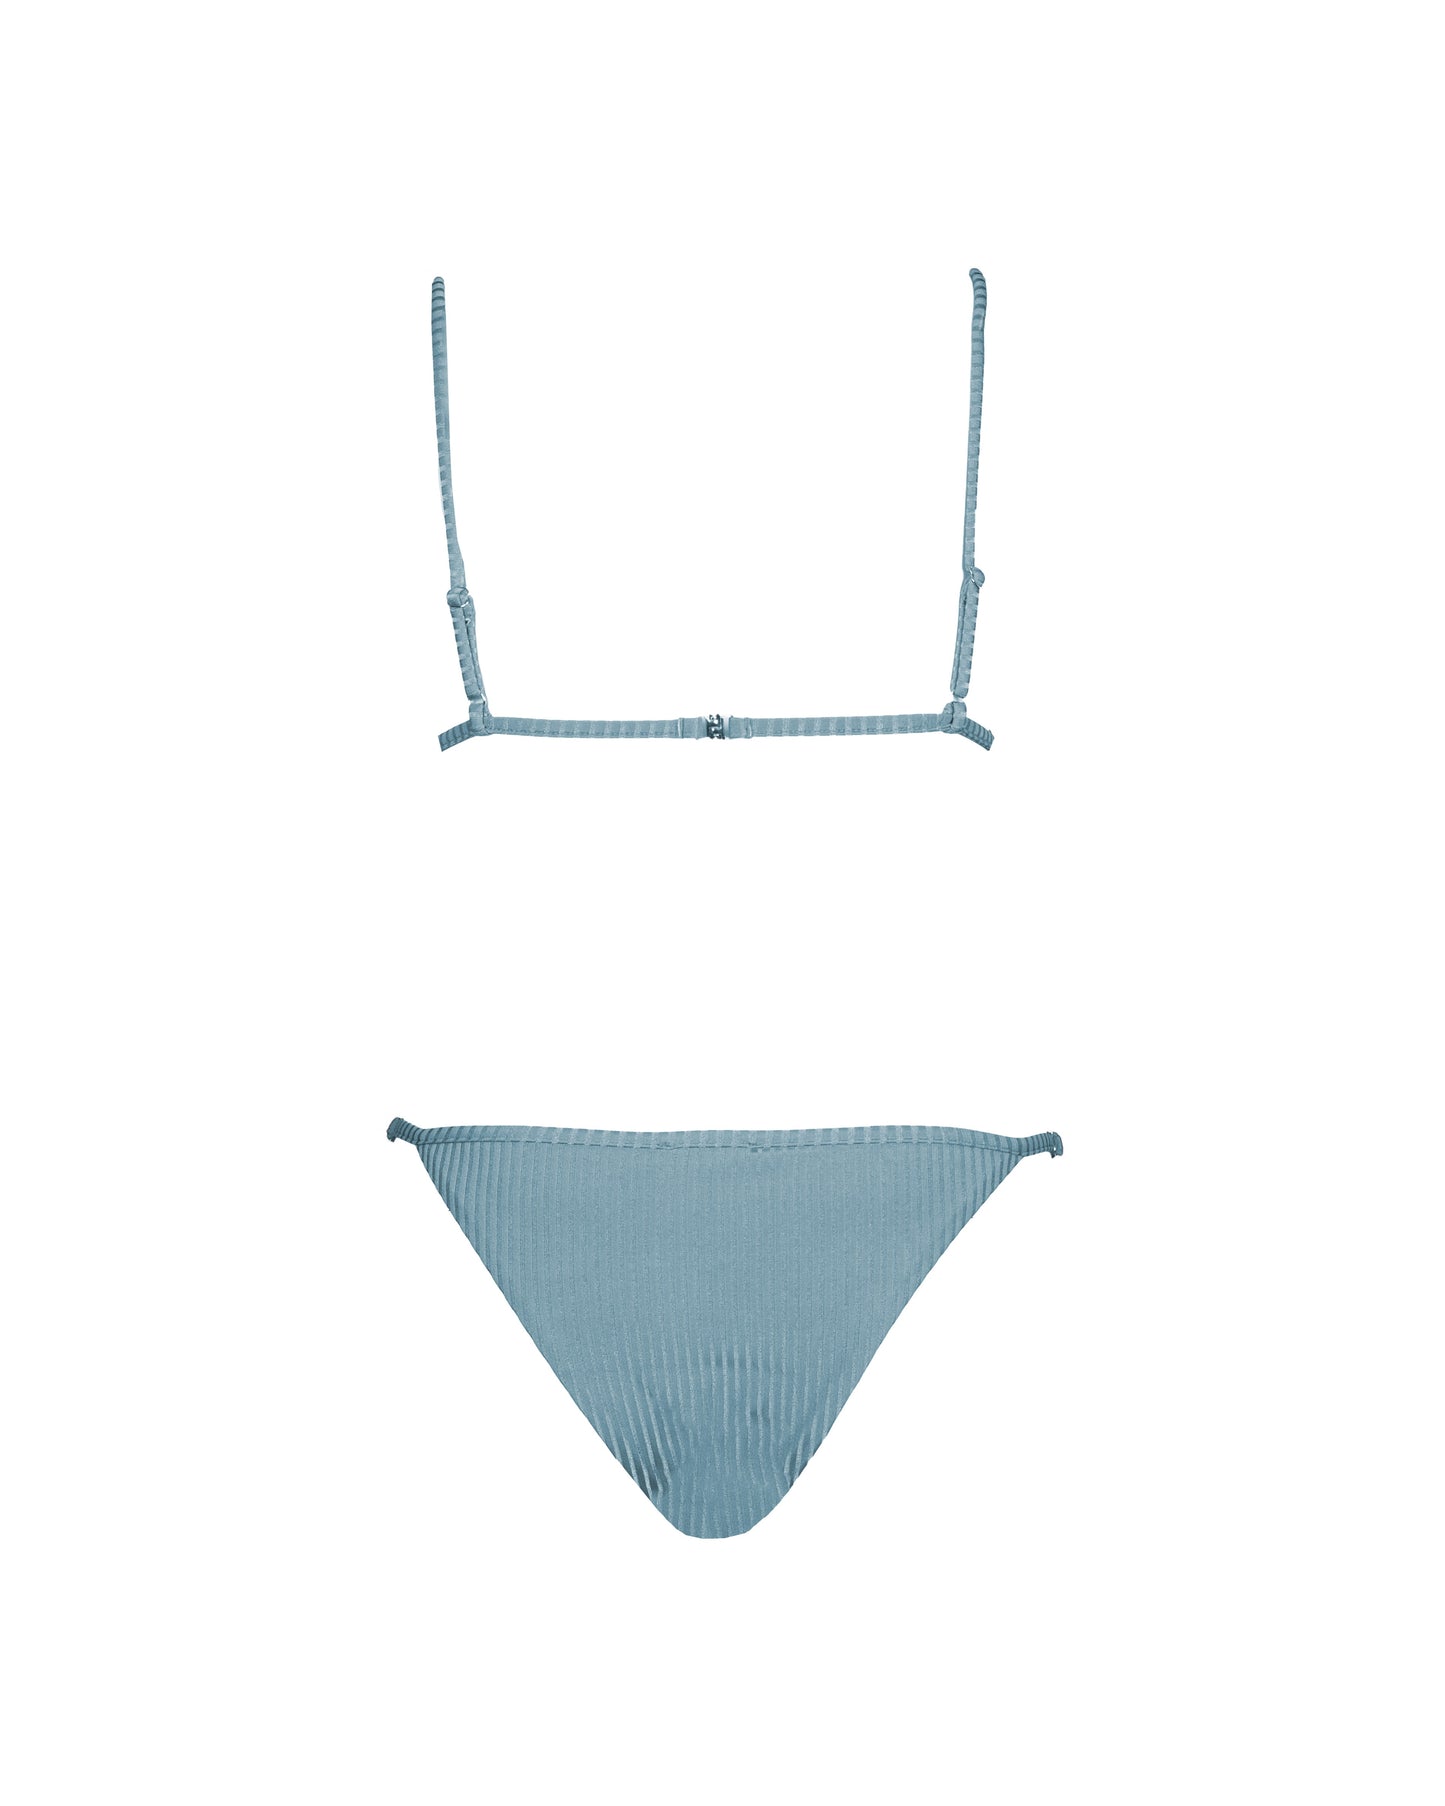 CLASSIC FINLANDIA Bikini a triangolo regolabile shimmer